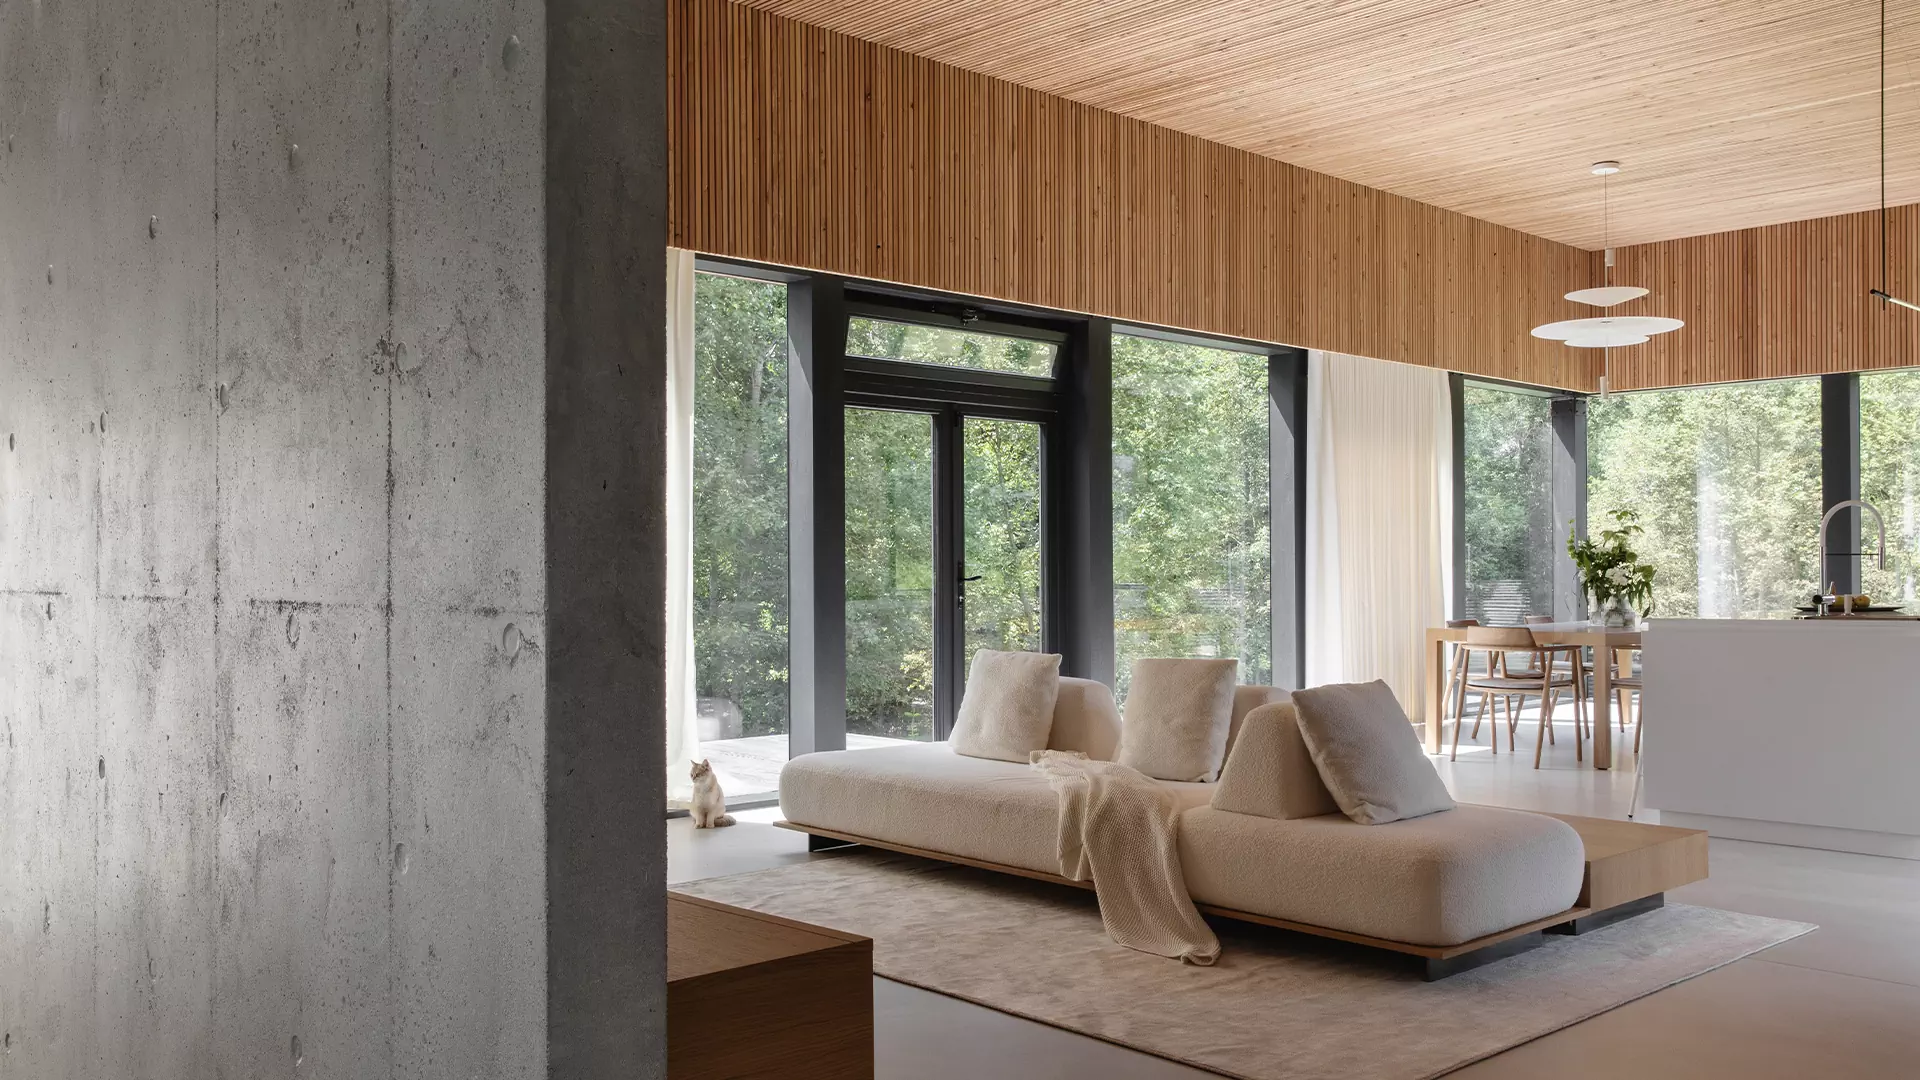 Дом мечты для архитектора: элегантный интерьер коттеджа в природных тонах — проект студии ZROBIM architects